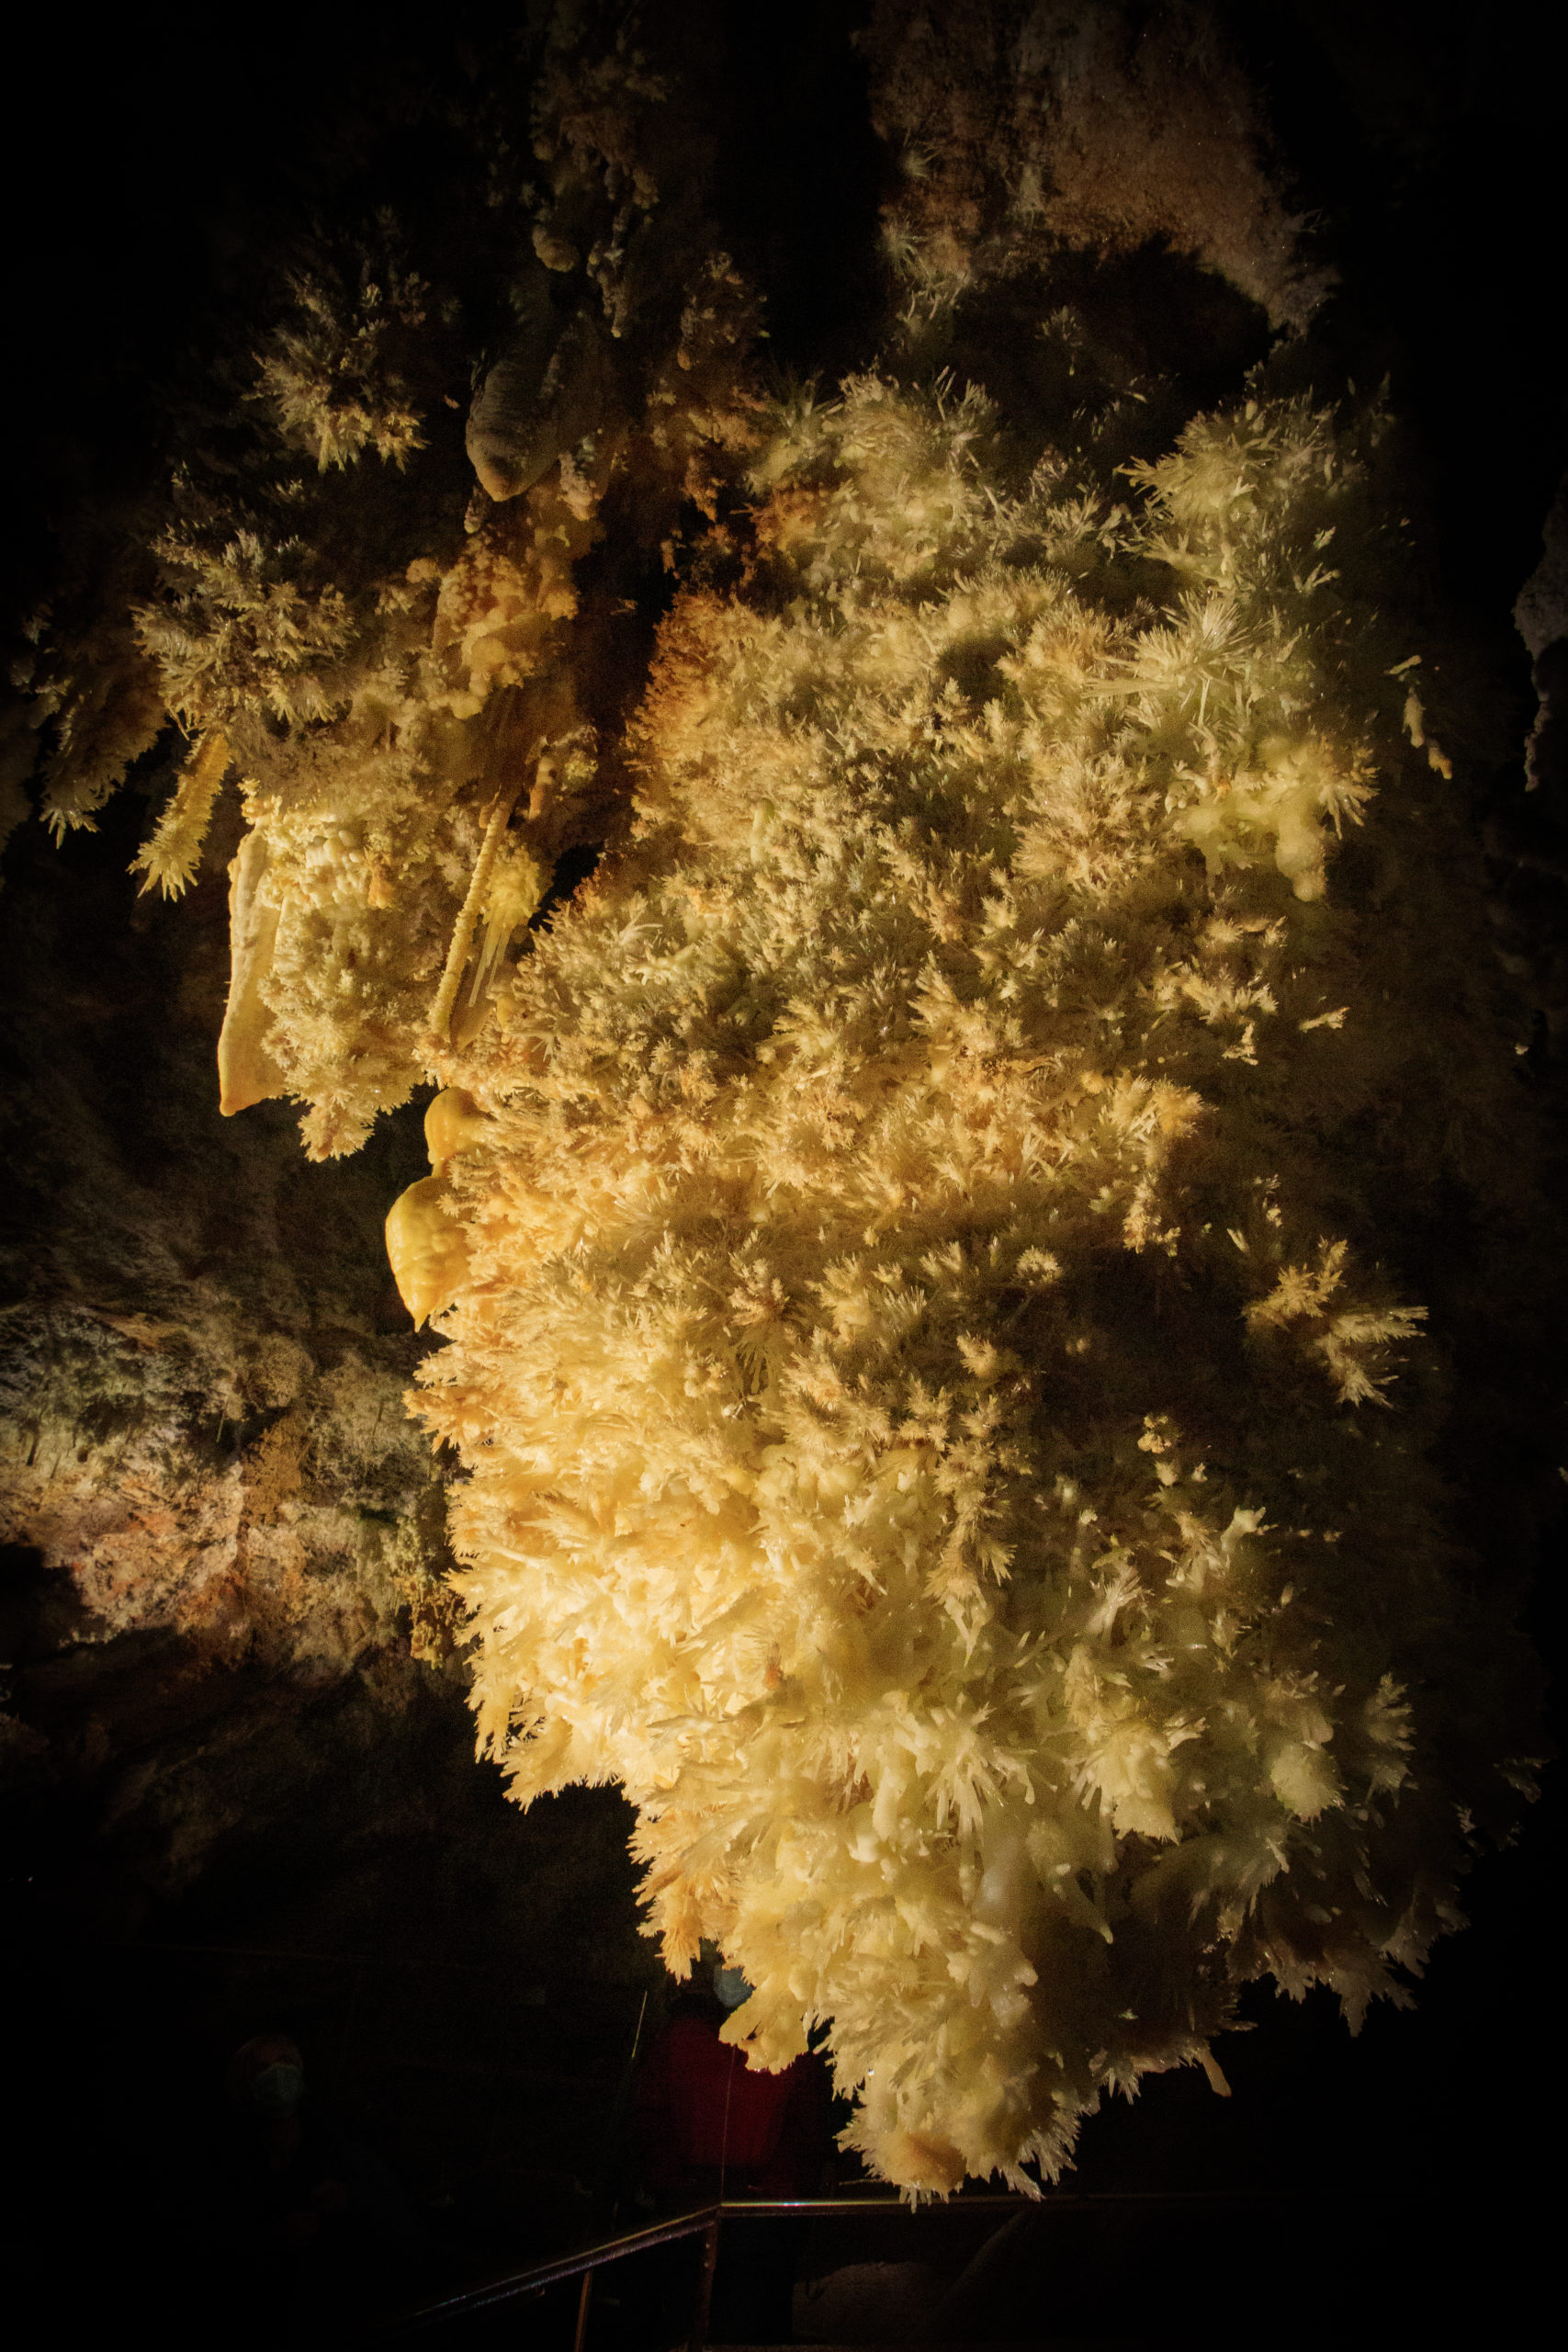 Lustre constitué de millions de cristaux d’aragonite. Grotte de Limousis, septembre 2021.